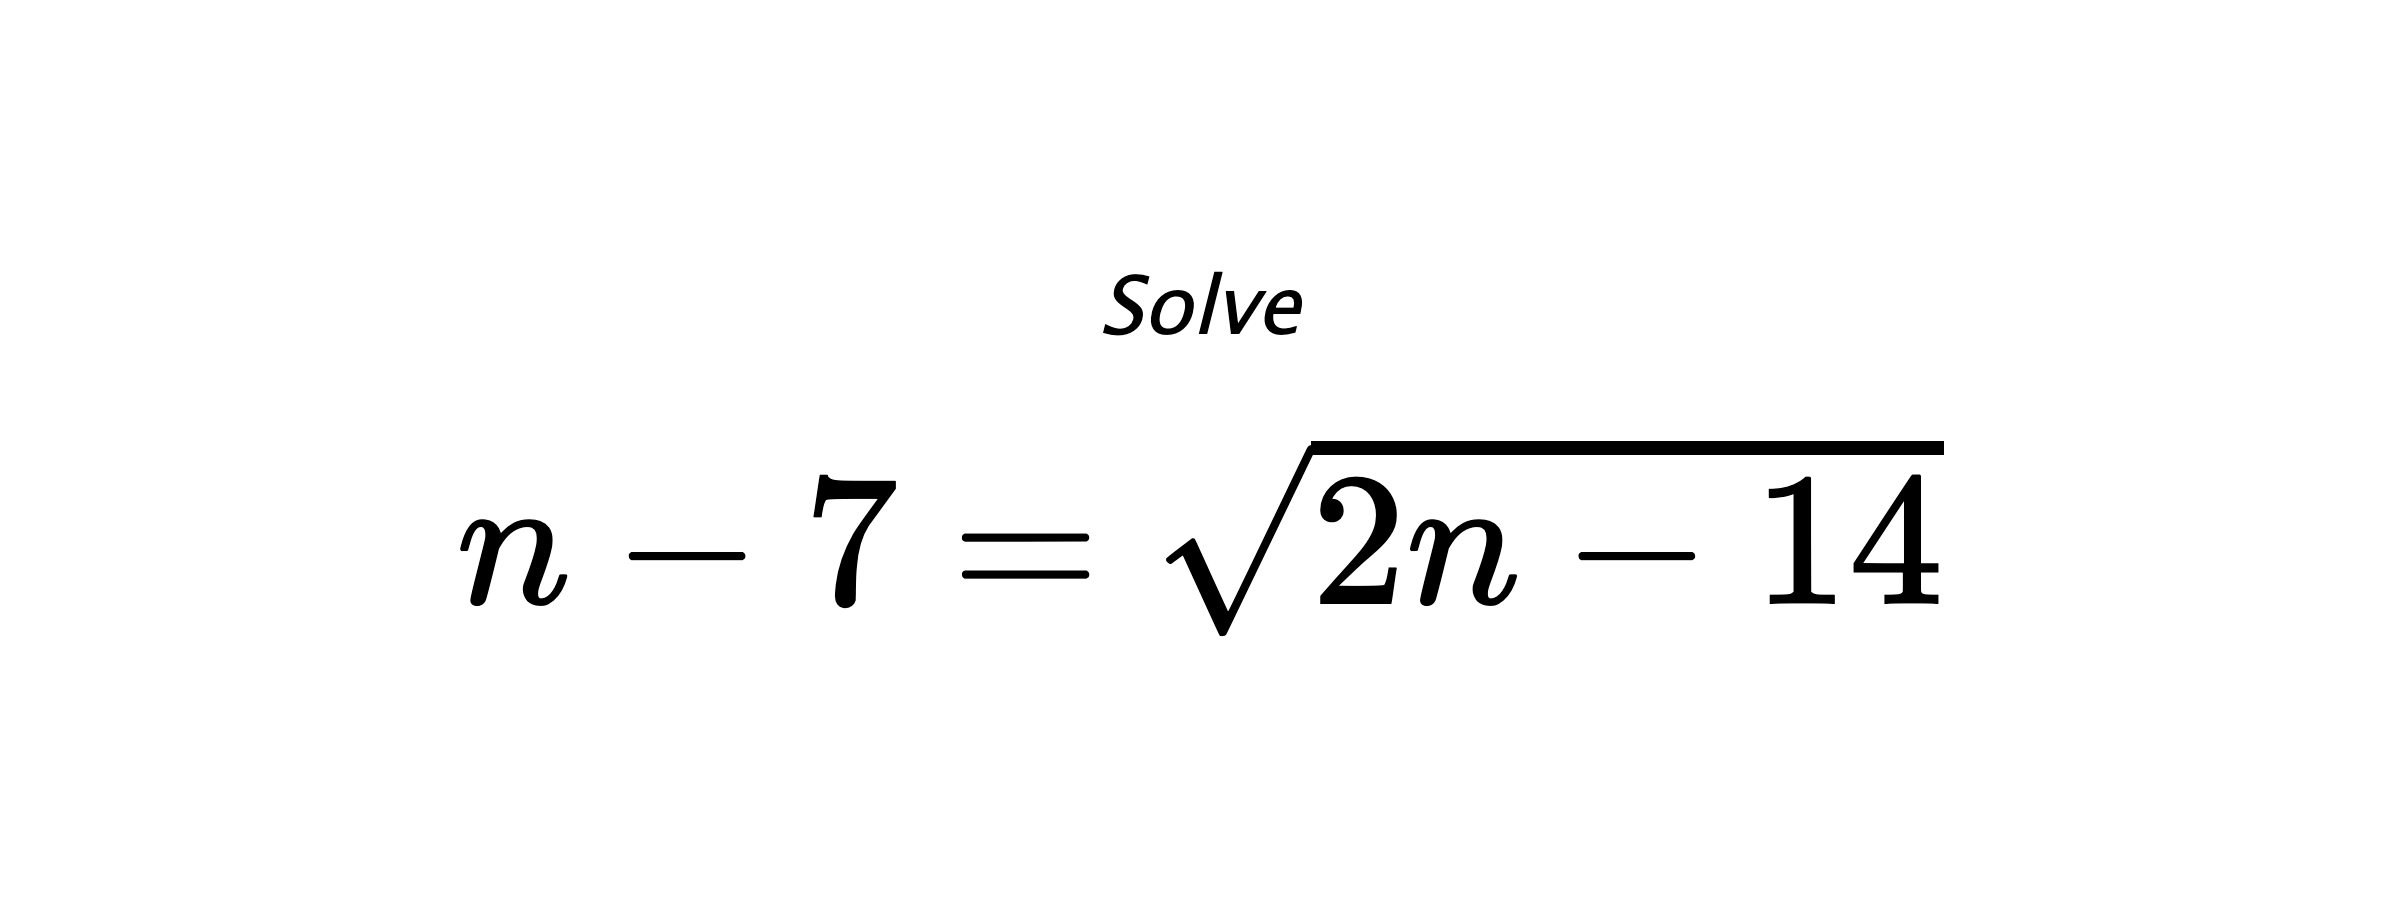 Solve $ n-7=\sqrt{2n-14} $